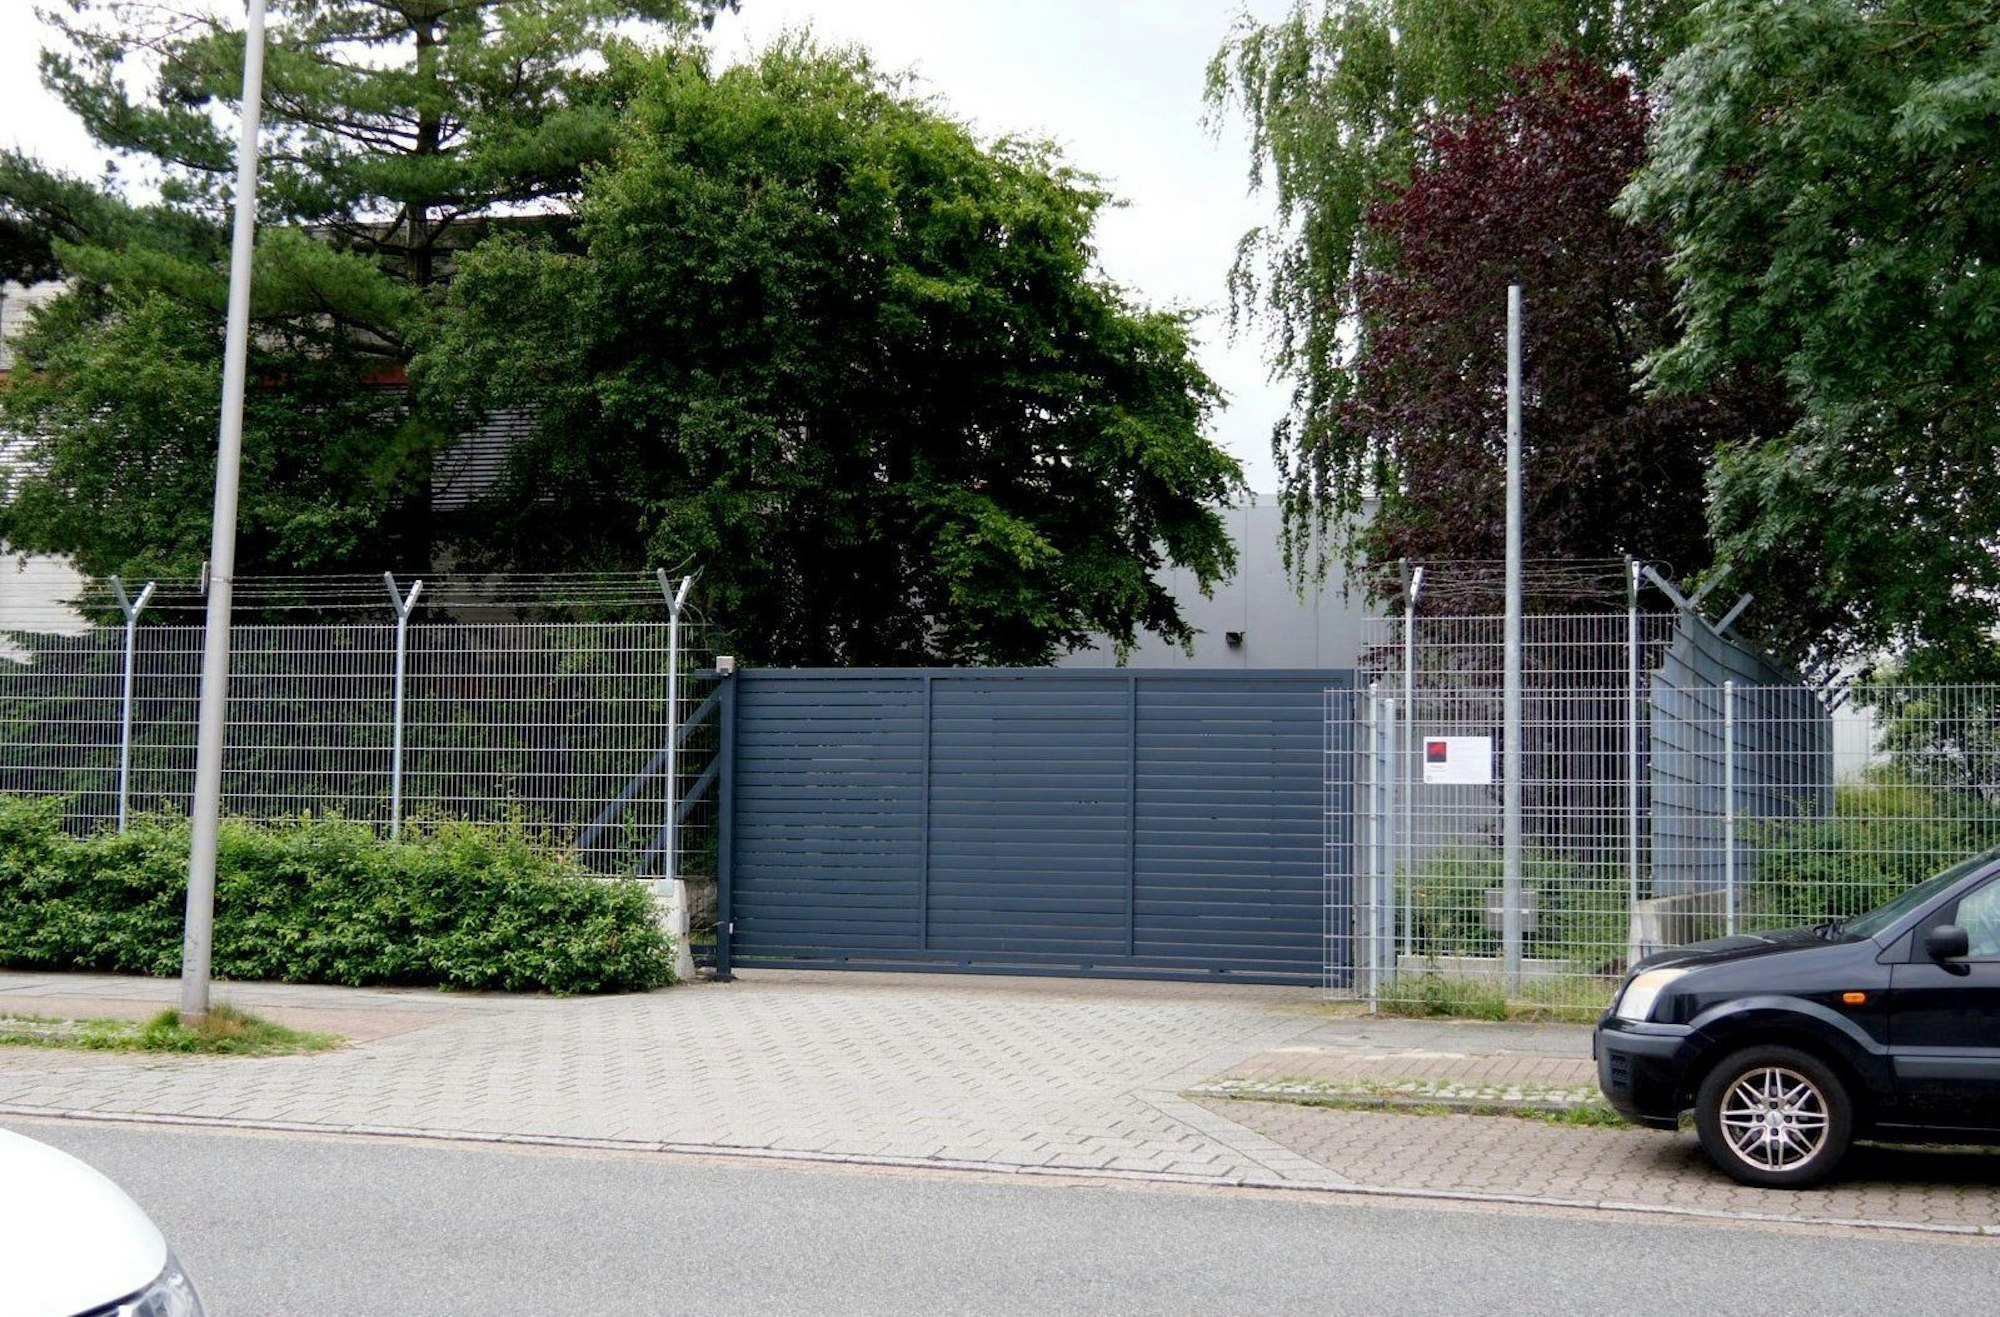 Juli 2021: Das Tor einer Bremen Firma für Geldtransporte ist geschlossen. Aus dieser Firma soll eine Angestellte insgesamt 8,2 Millionen Euro geschleust haben. (Archivbild)